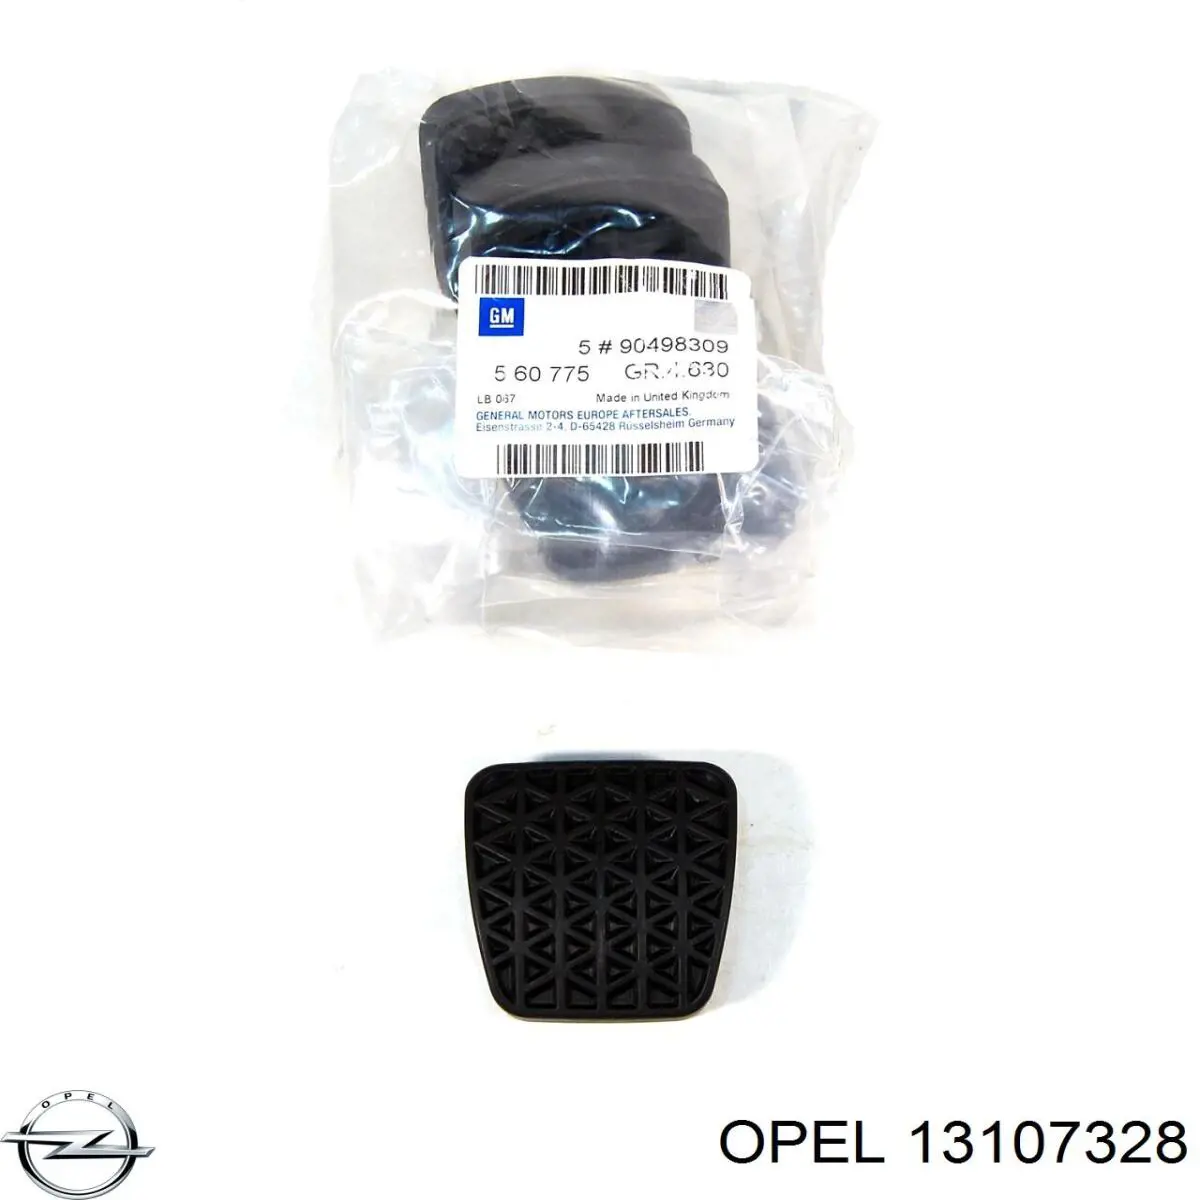 13107328 Opel bloqueo silencioso (almohada De La Viga Delantera (Bastidor Auxiliar))